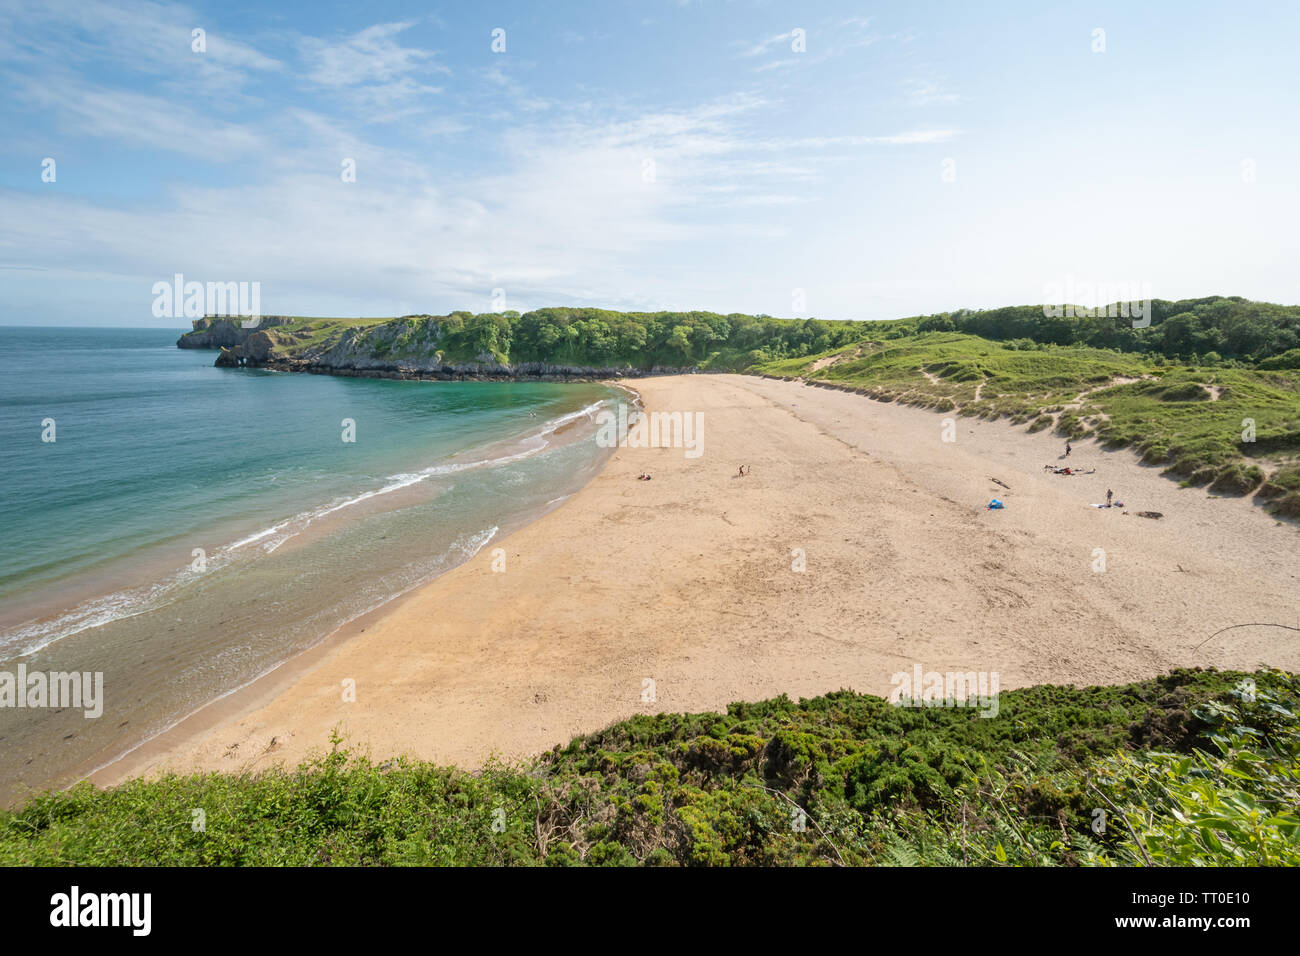 Barafundle Bay, une attraction de visiteurs gallois avec une plage de sable, à Pembrokeshire, Pays de Galles, Royaume-Uni. Plage calme, presque vide. Banque D'Images